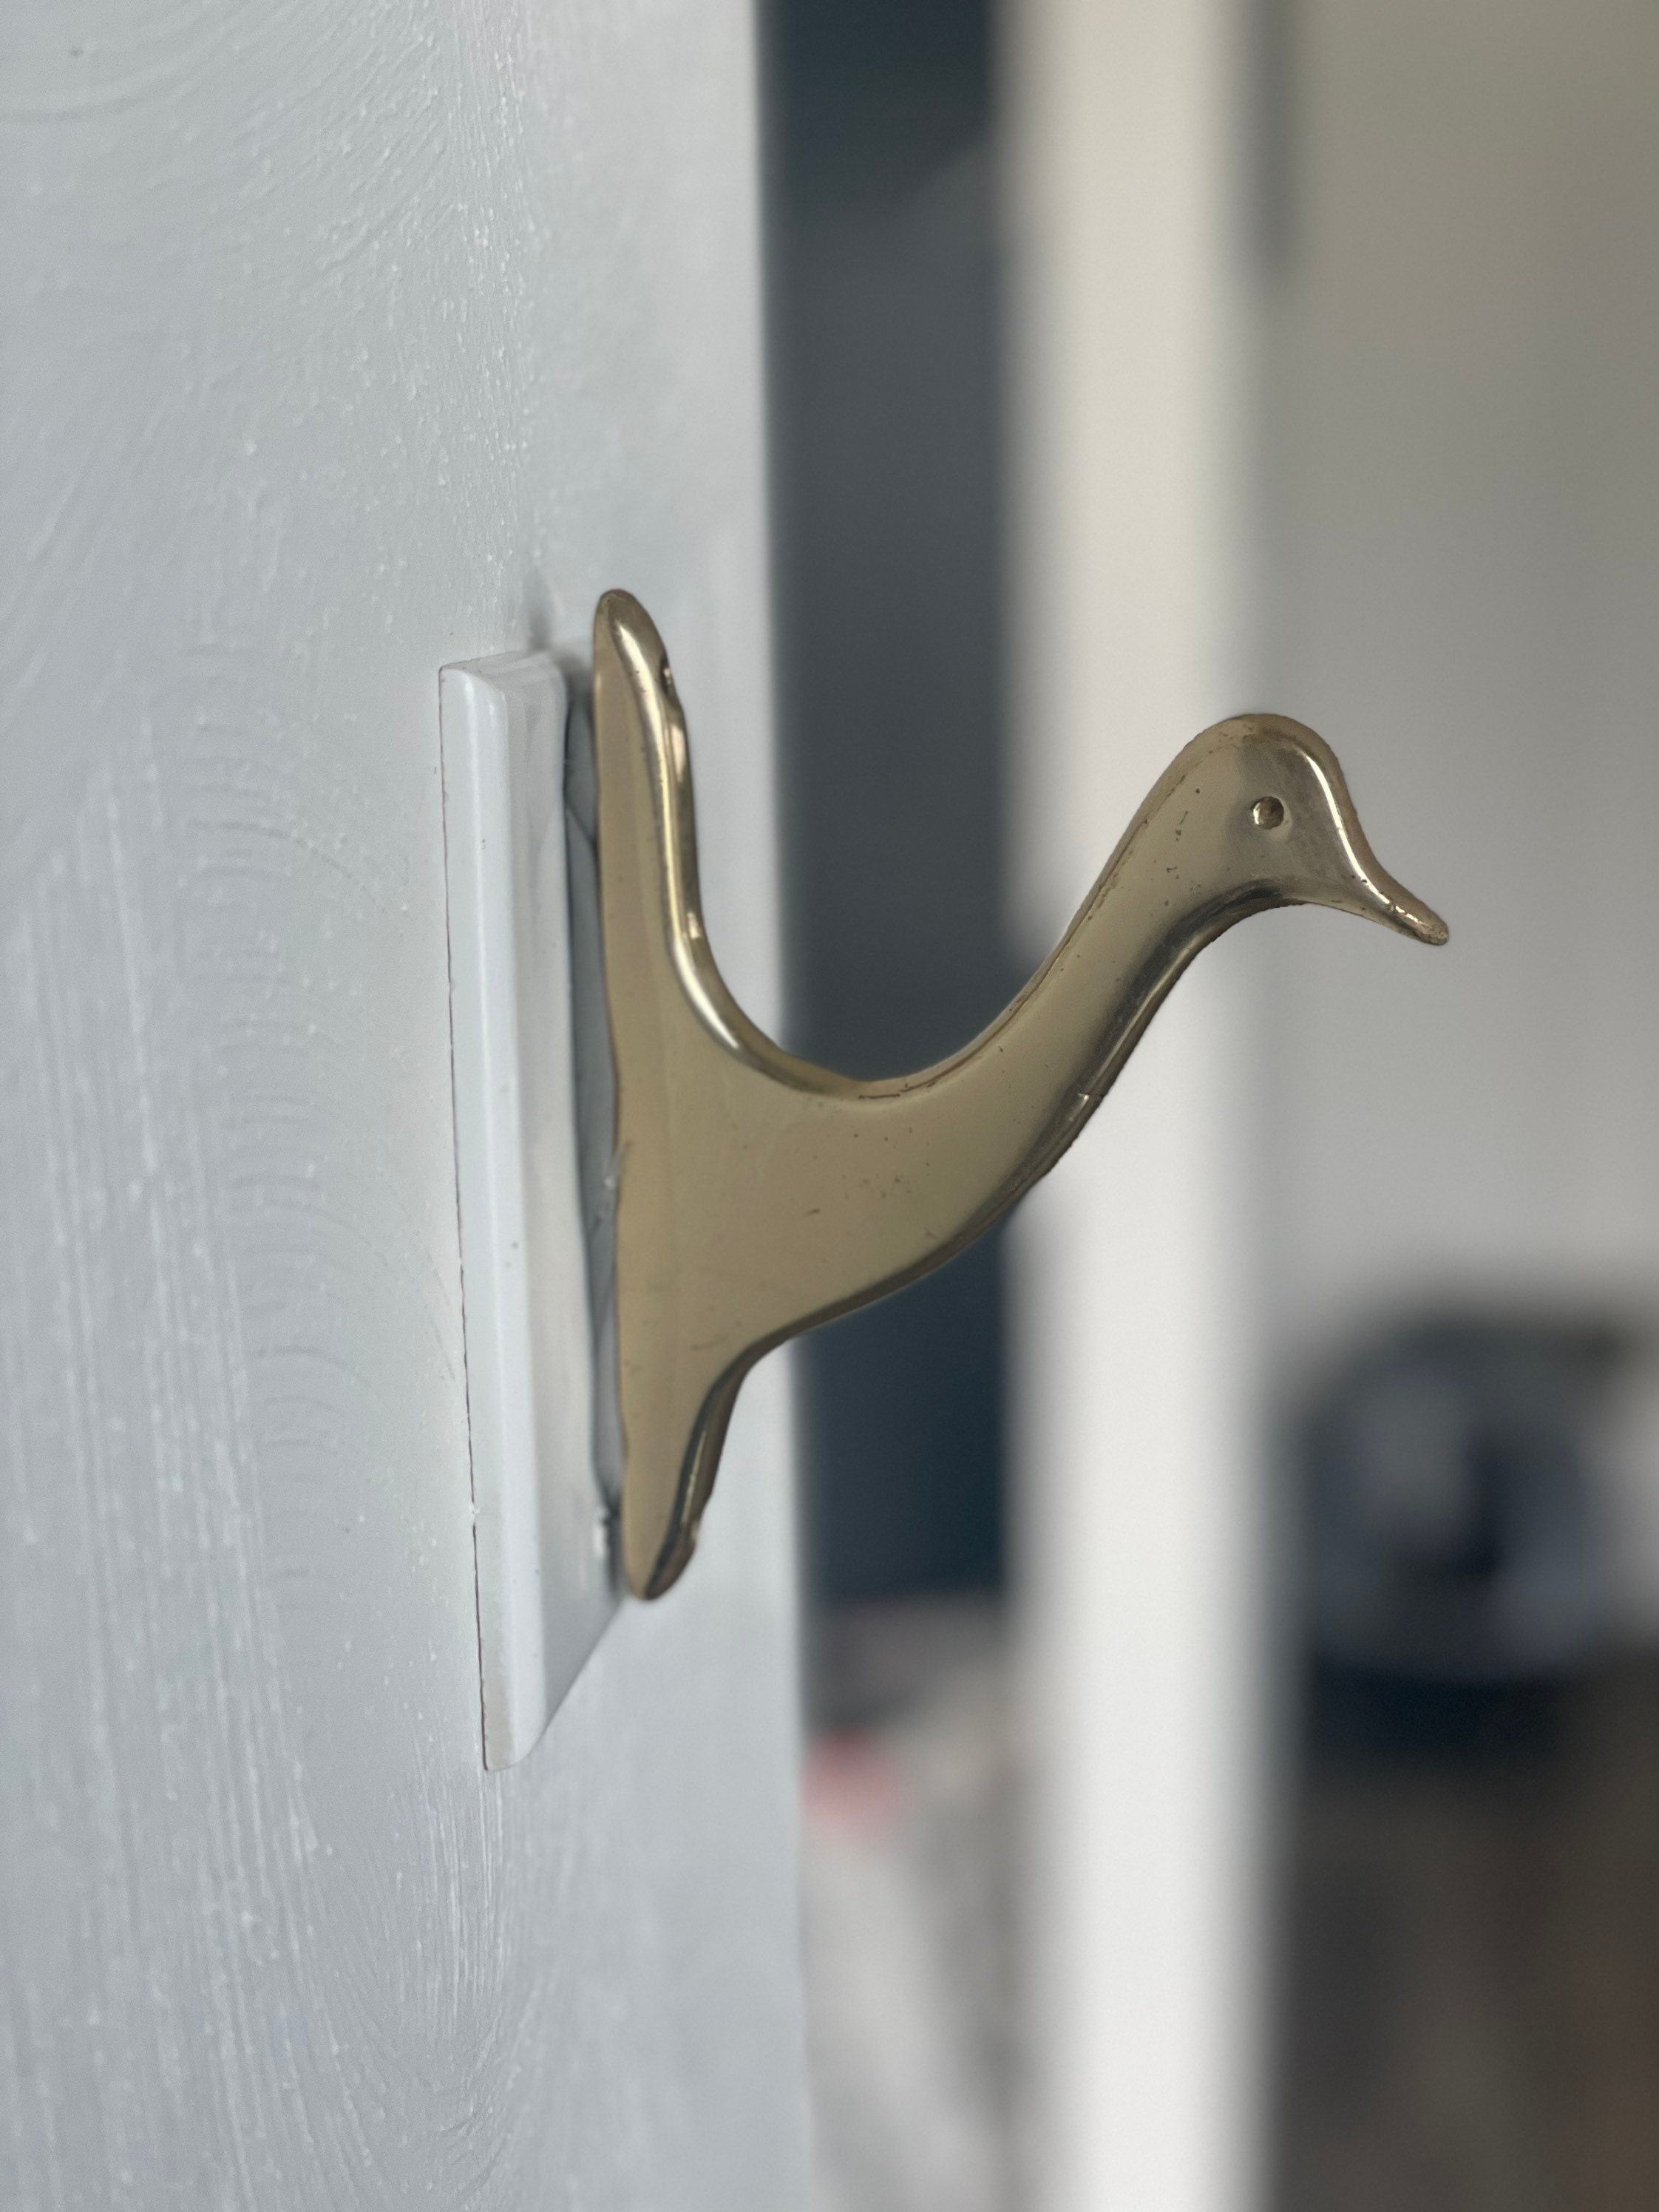 Brass Wall Hook - Swimming Duck – Bowerbird